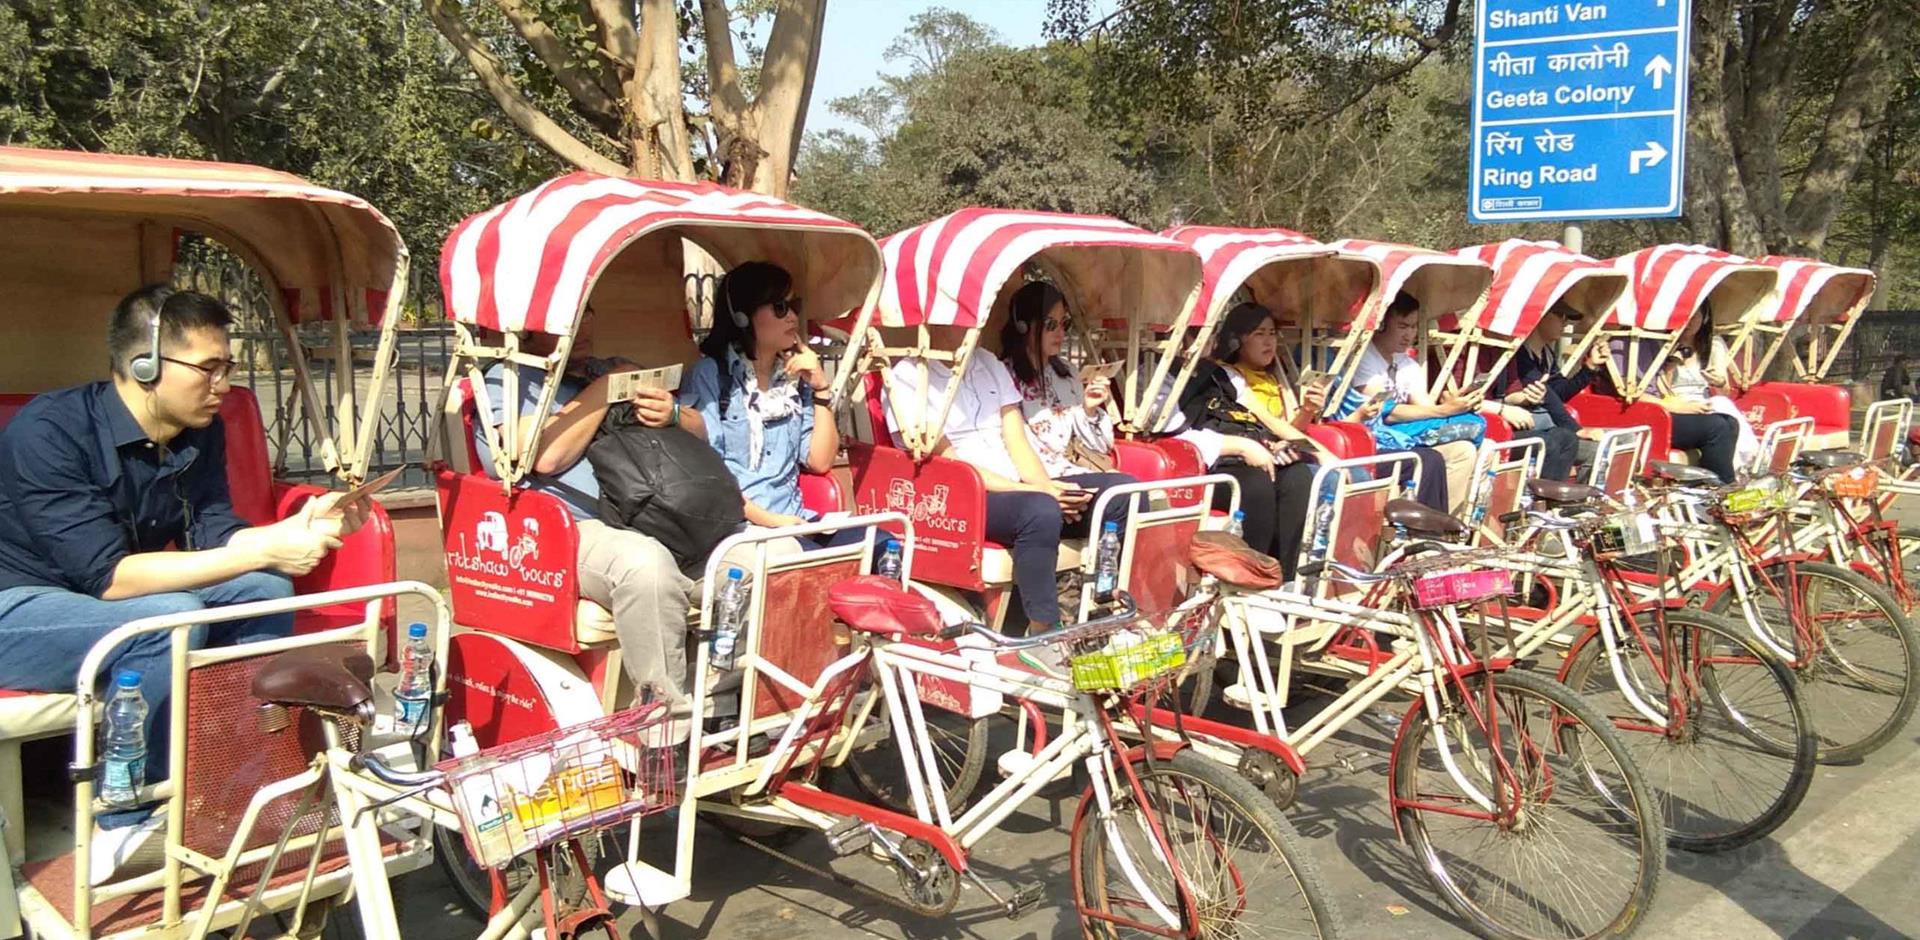 Take a rickshaw ride